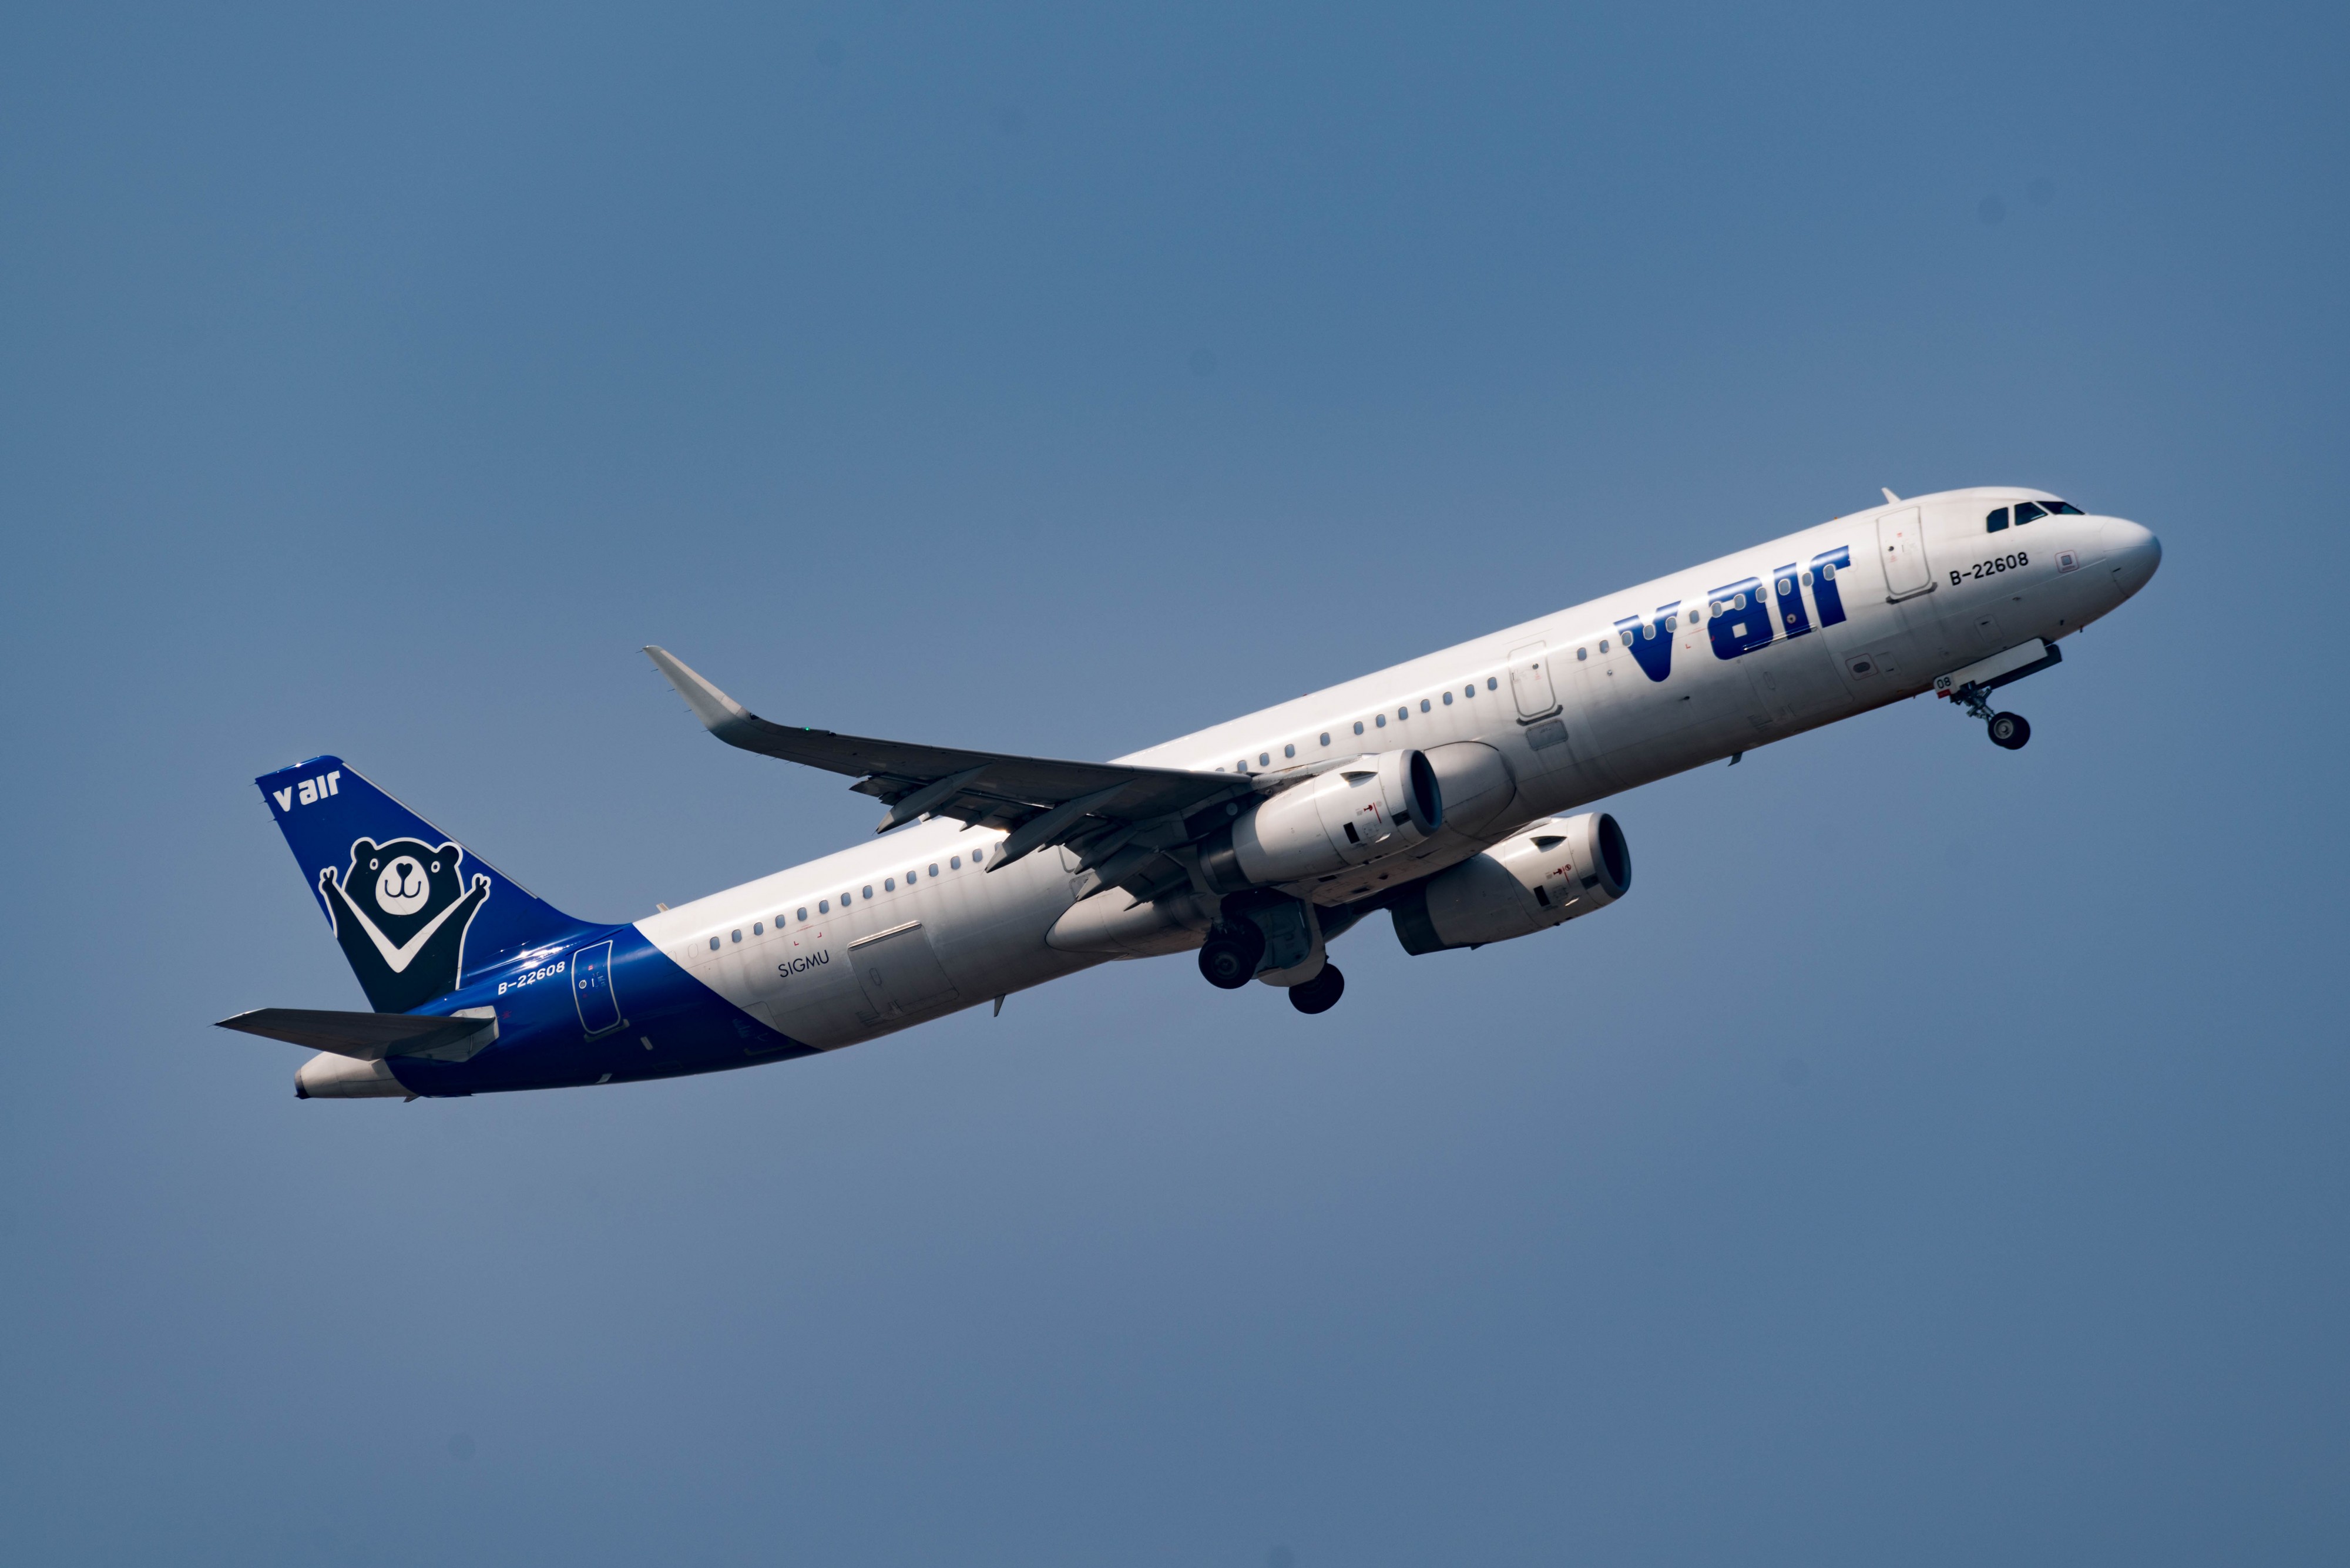 V Air, Airbus A321-231(WL), B-22608 (24720410694)